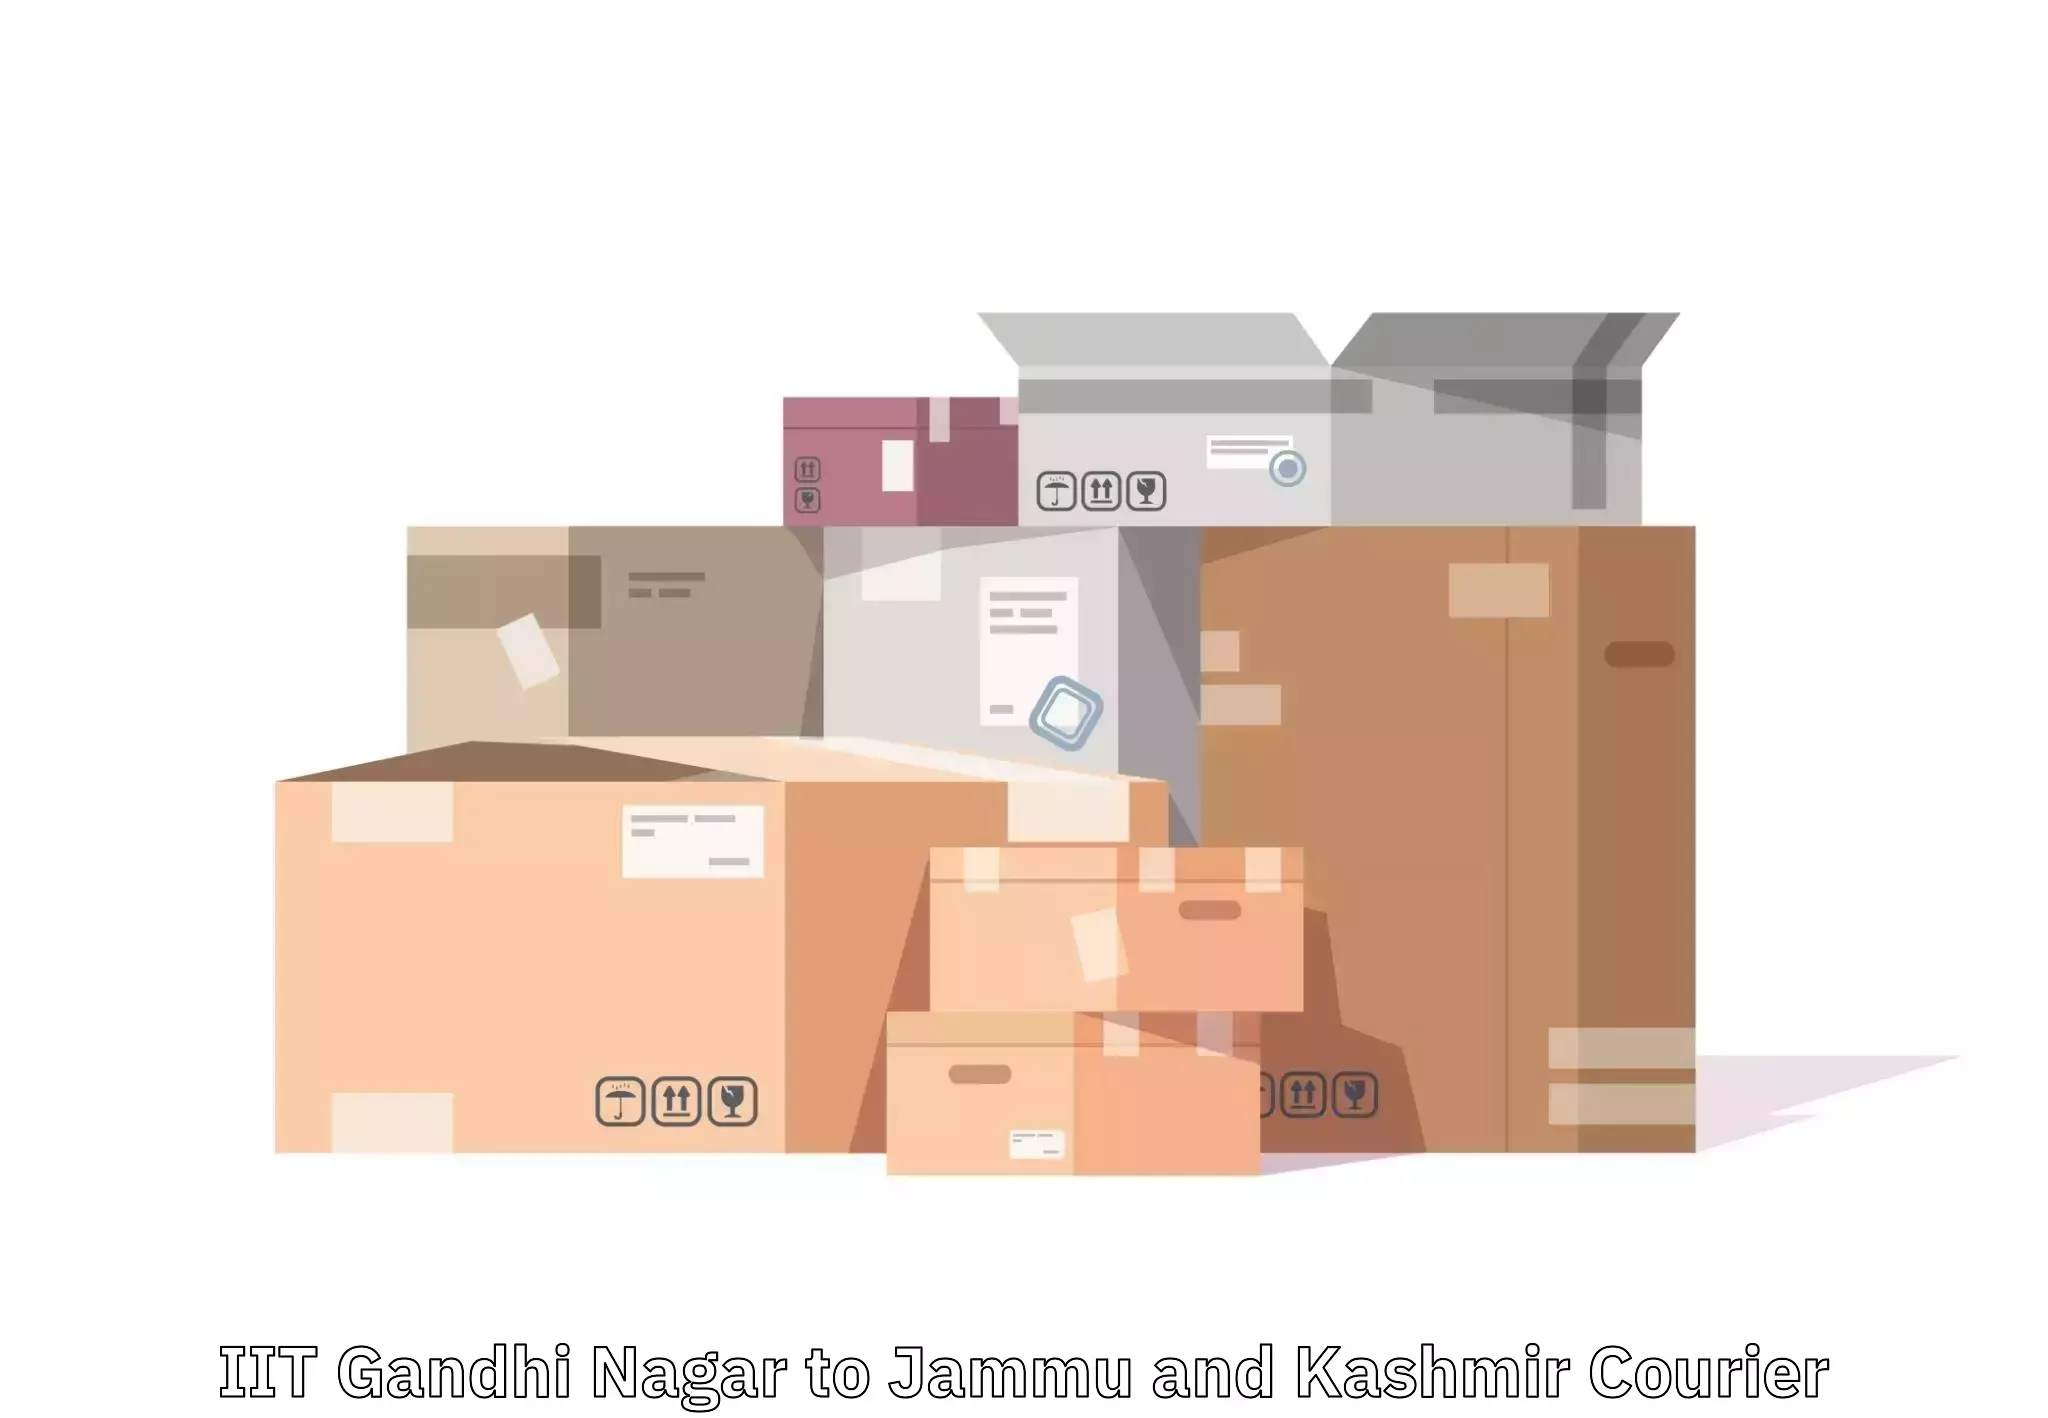 Luggage shipment processing IIT Gandhi Nagar to Jammu